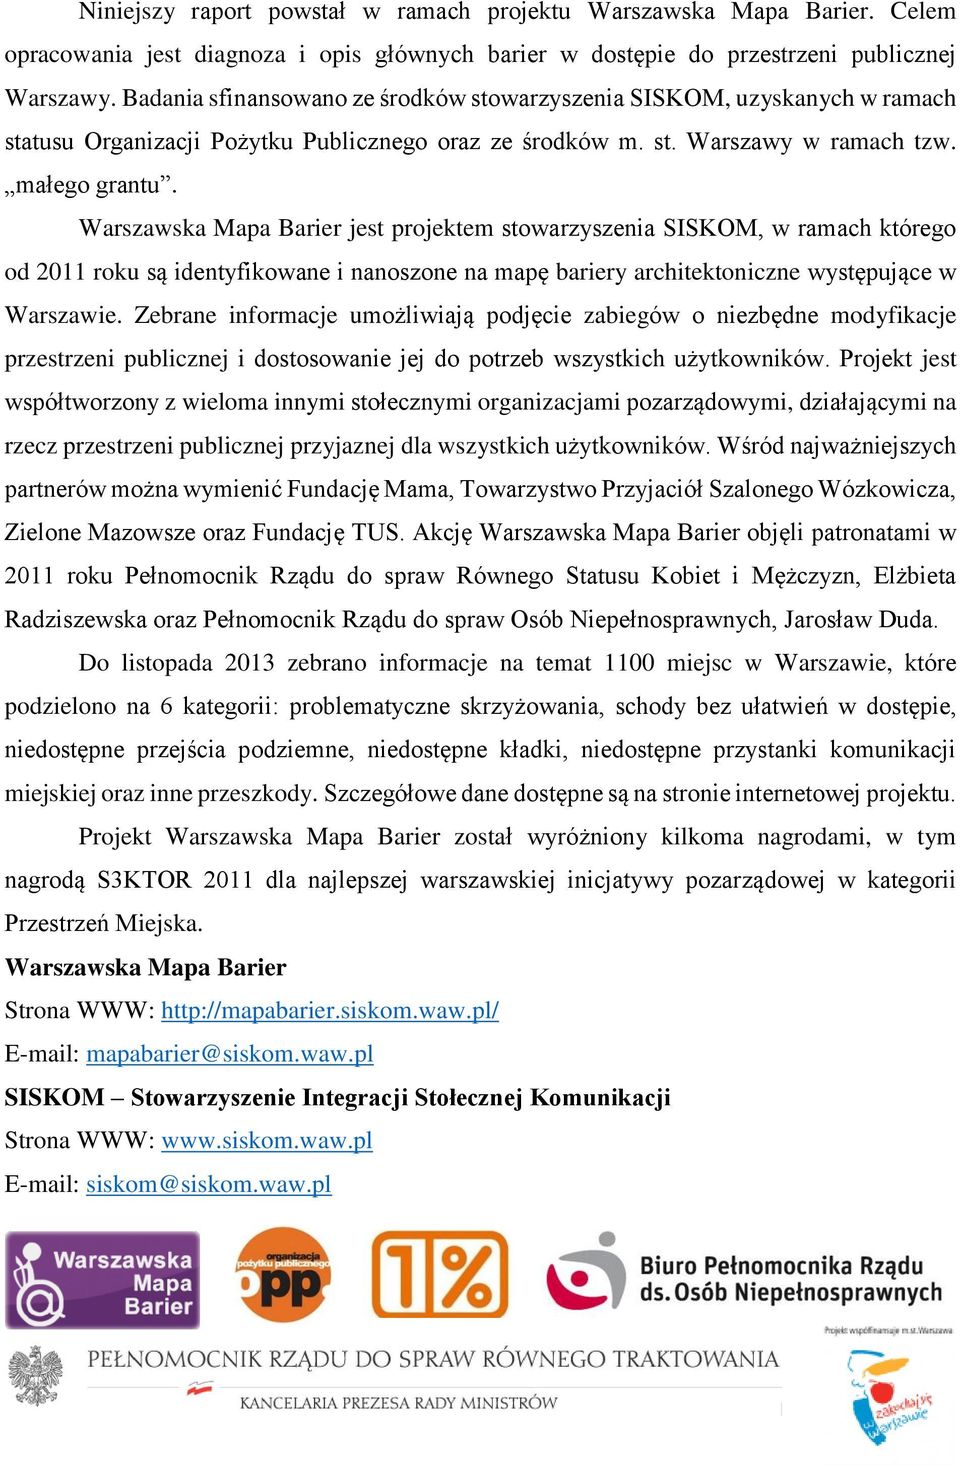 Warszawska Mapa Barier jest projektem stowarzyszenia SISKOM, w ramach którego od 2011 roku są identyfikowane i nanoszone na mapę bariery architektoniczne występujące w Warszawie.